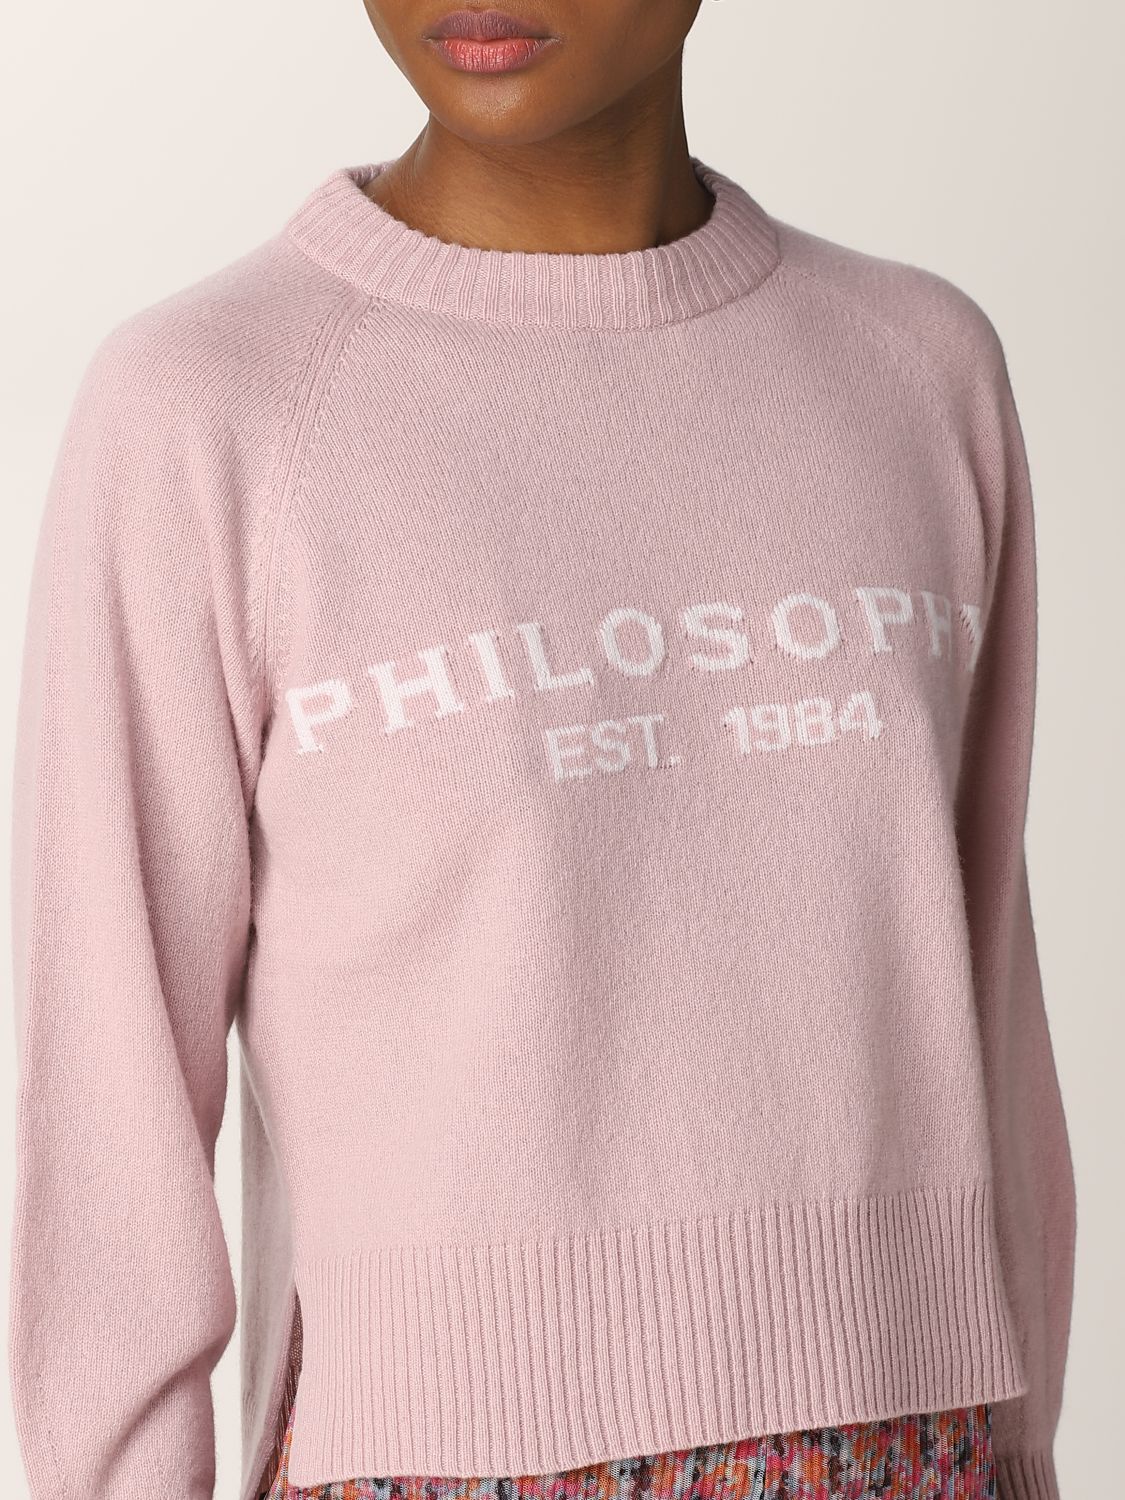 Pullover Philosophy Di Lorenzo Serafini: Philosophy Di Lorenzo Serafini Damen pullover pink 5